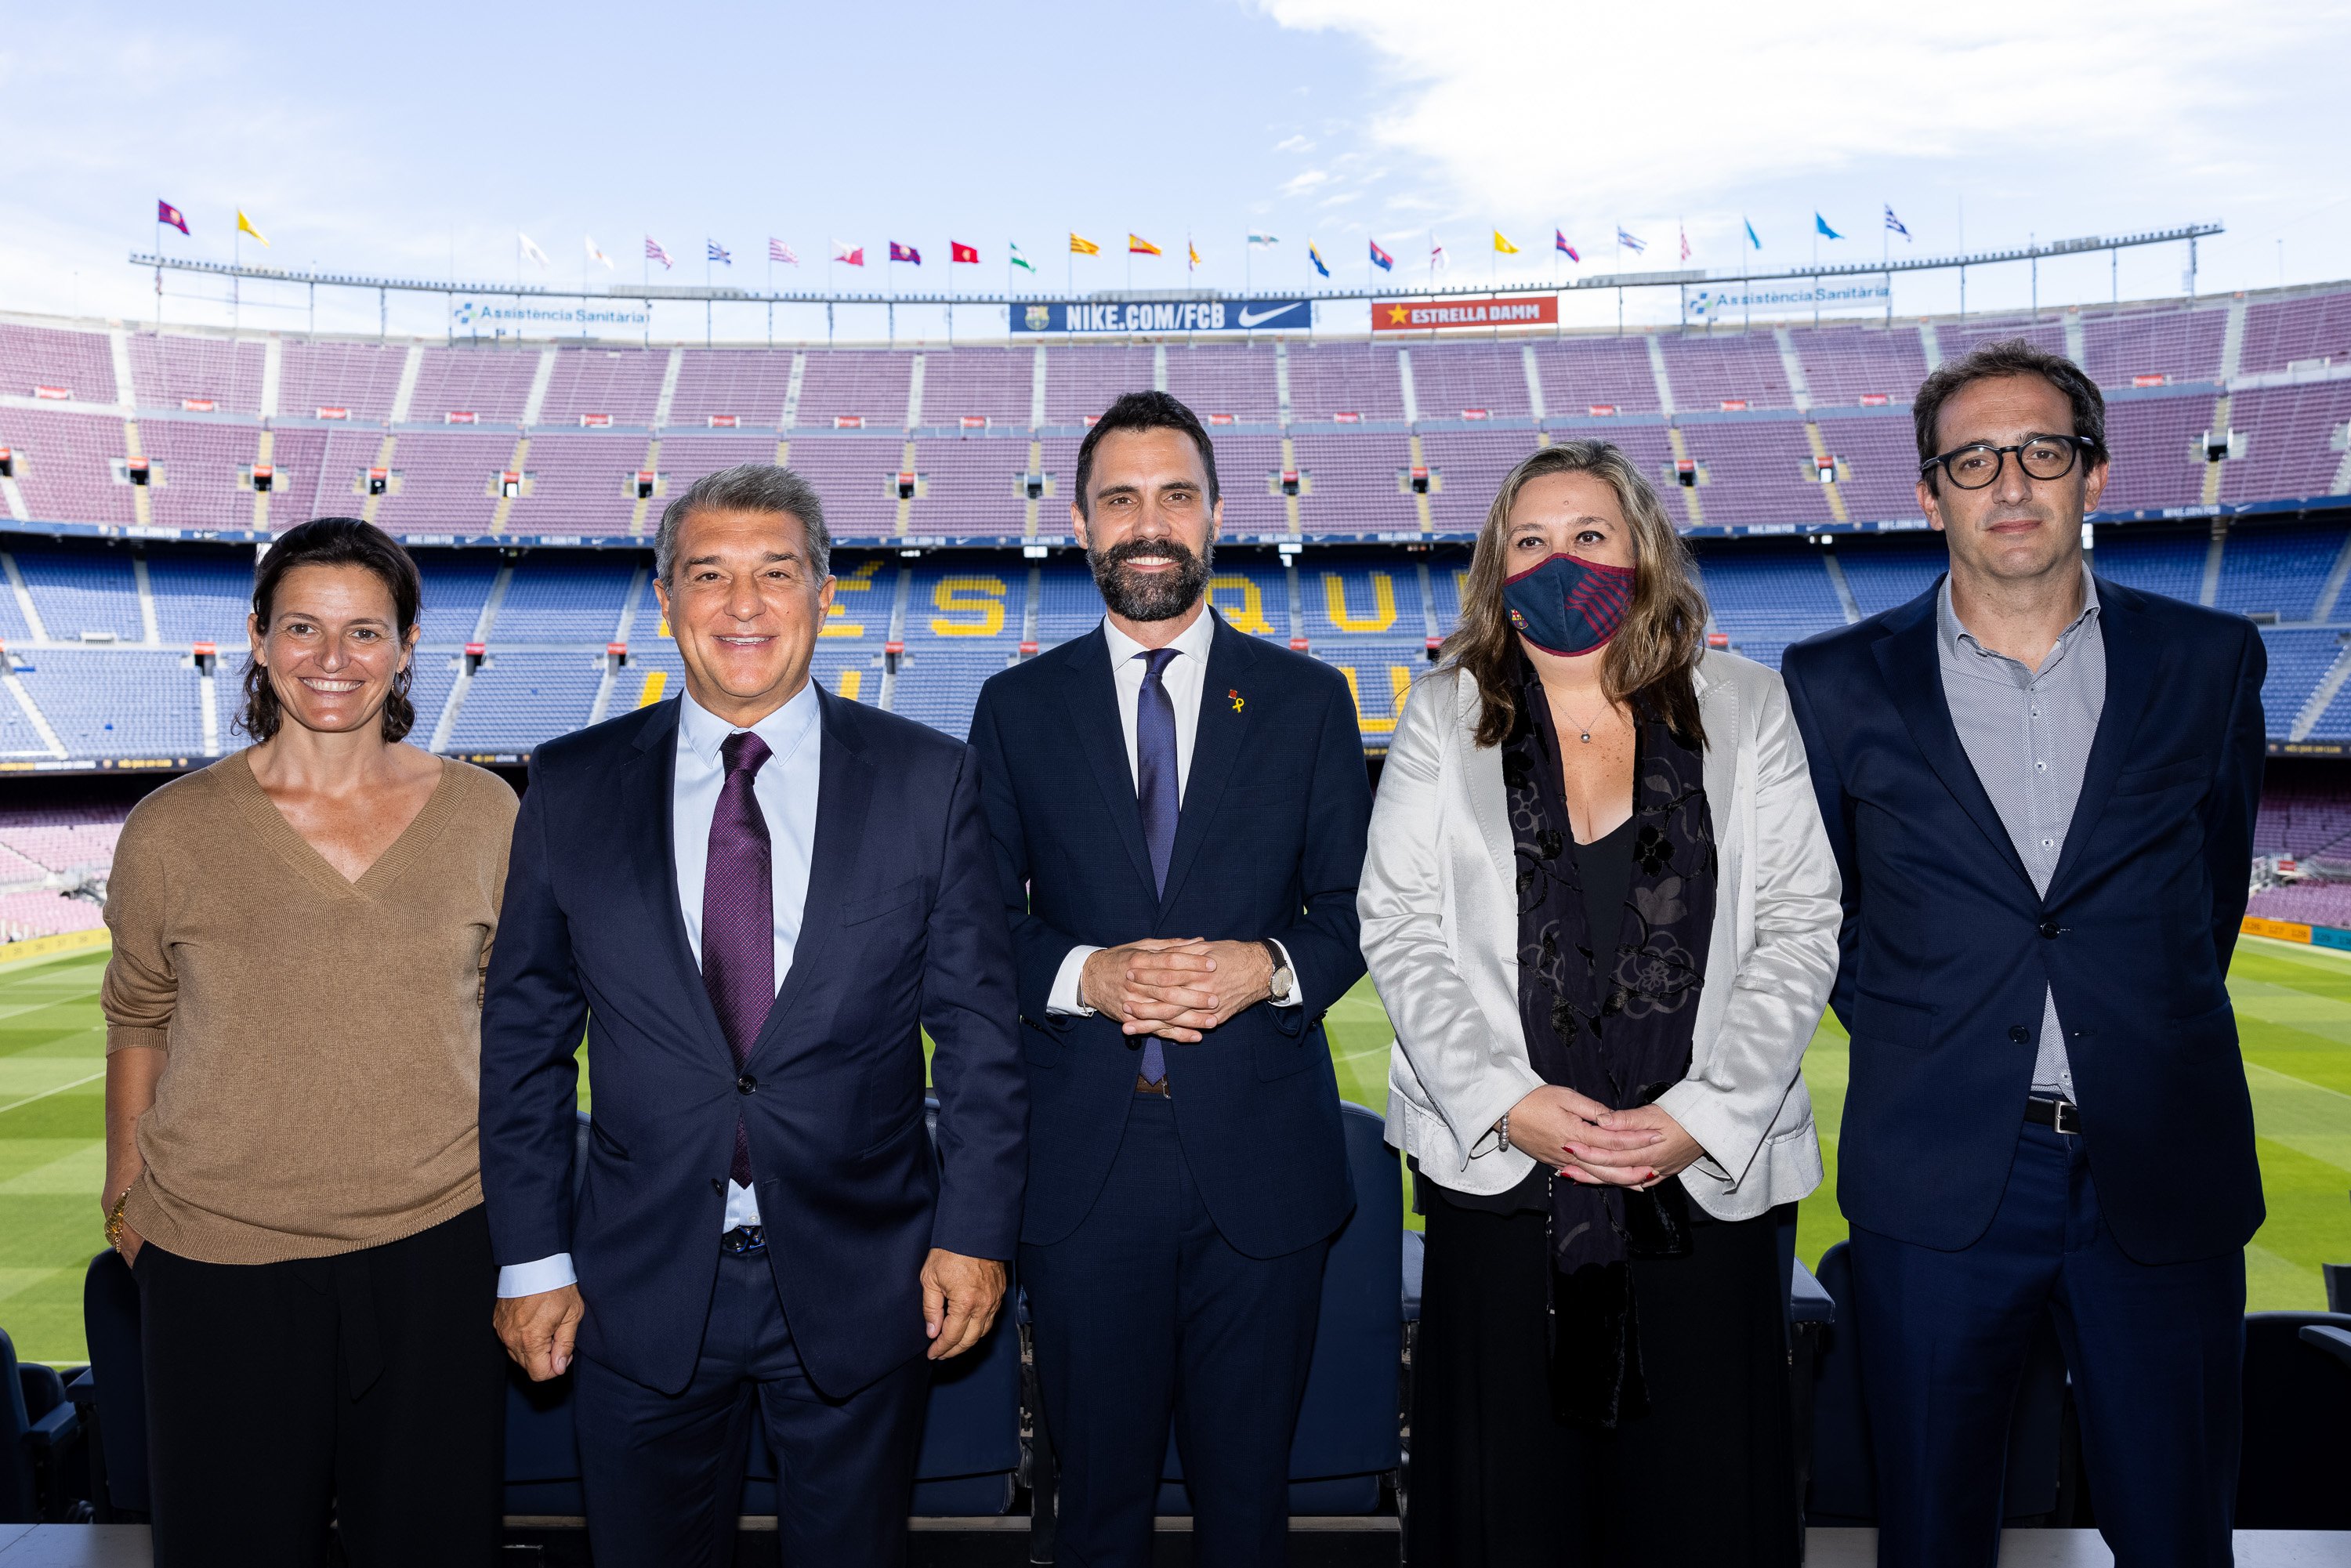 El Barça i el Govern renoven la seva aliança per promoure el turisme a Catalunya